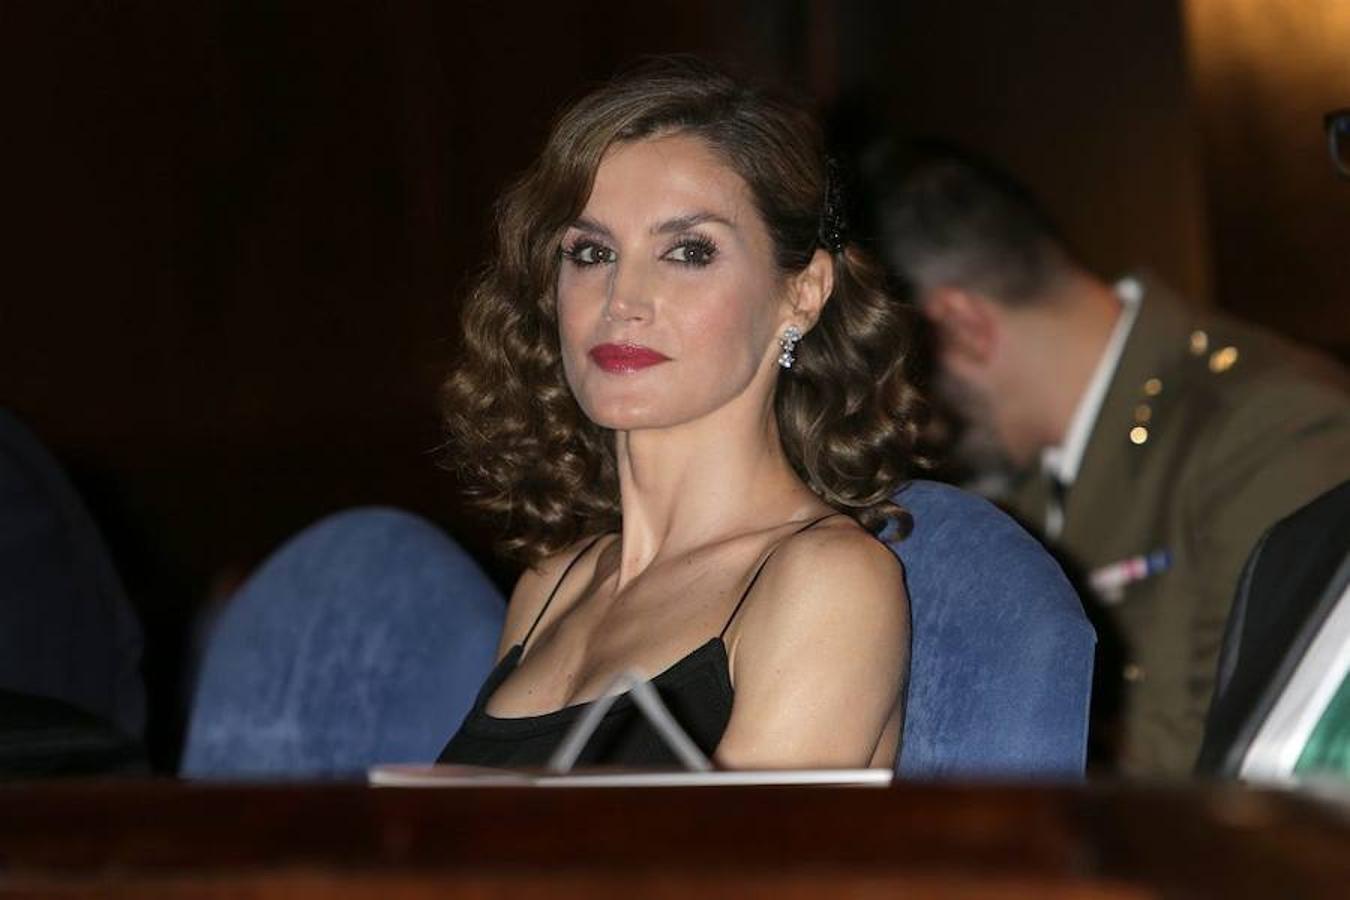 La Reina sentada esperando que empiece el XXV Concierto de los Premios Príncipe de Asturias.